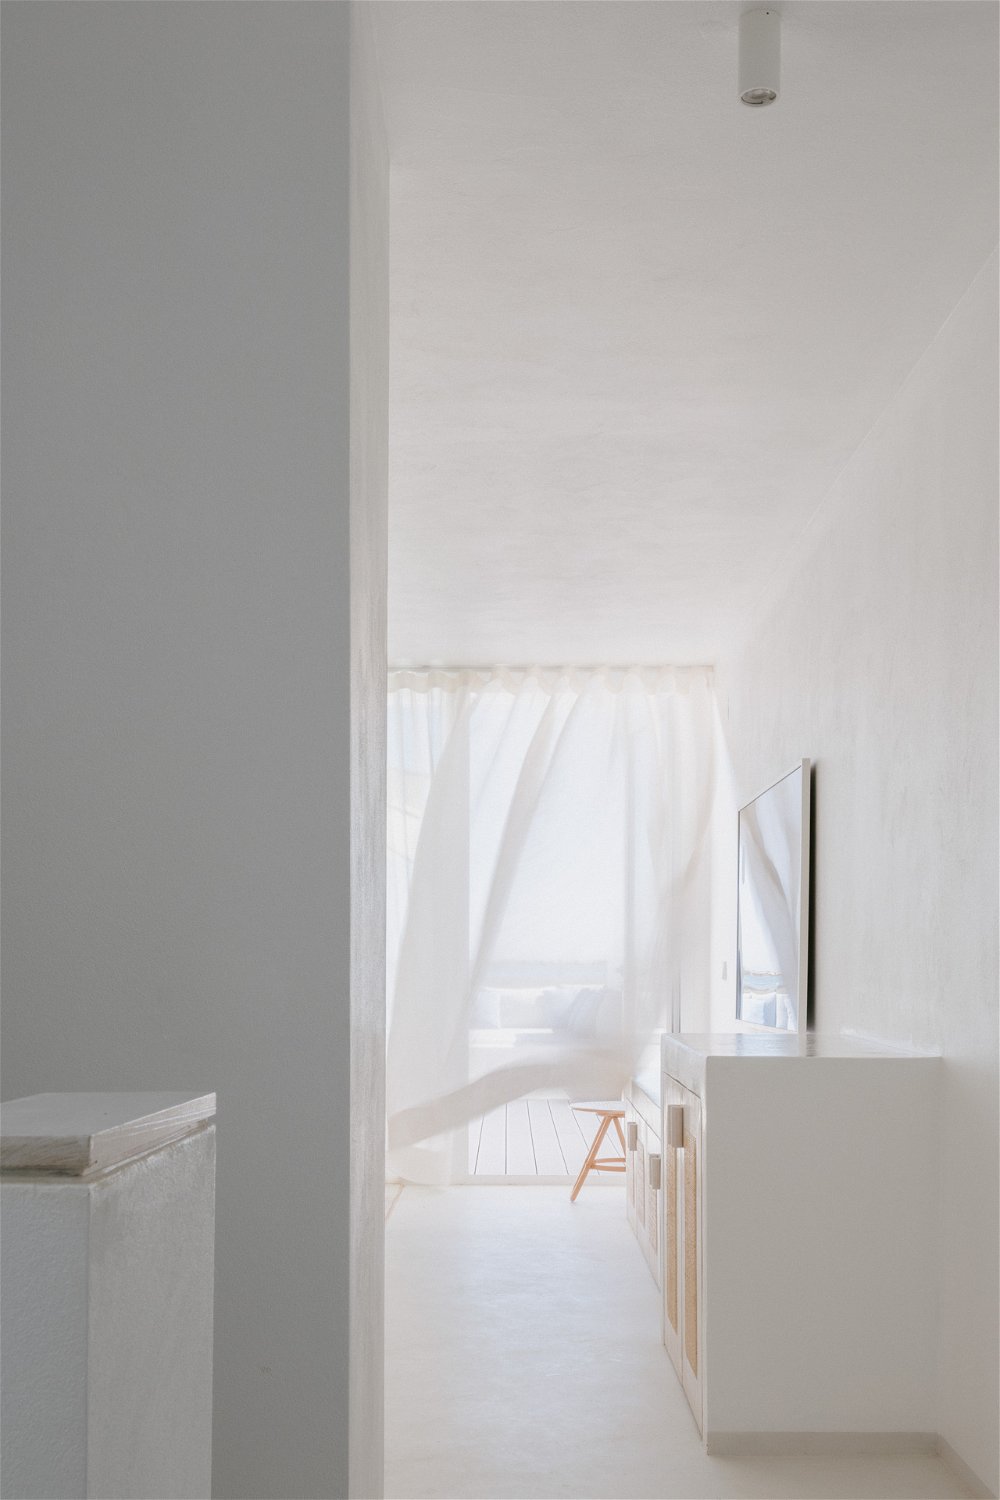 3-bedroom villa with private terrace in Fuseta, Faro. 3847534254